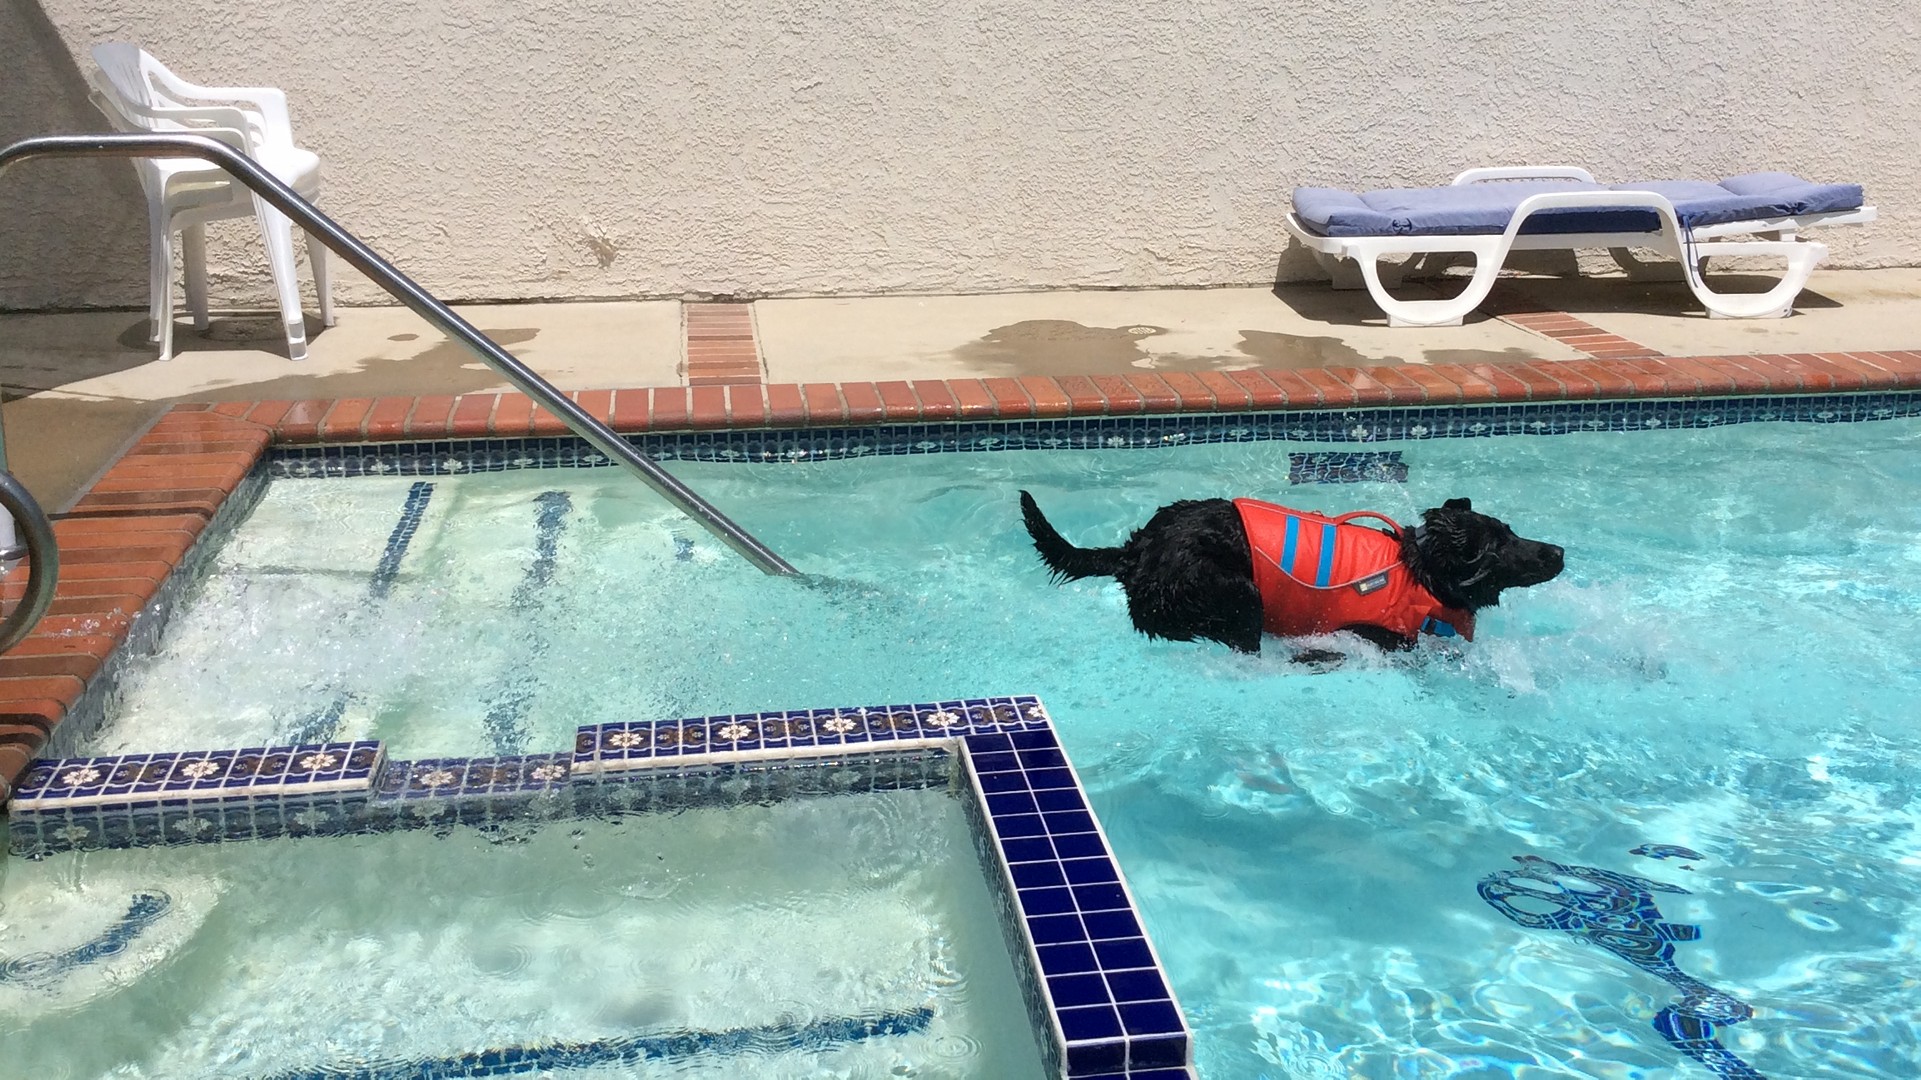 Macklin II jumping into the pool